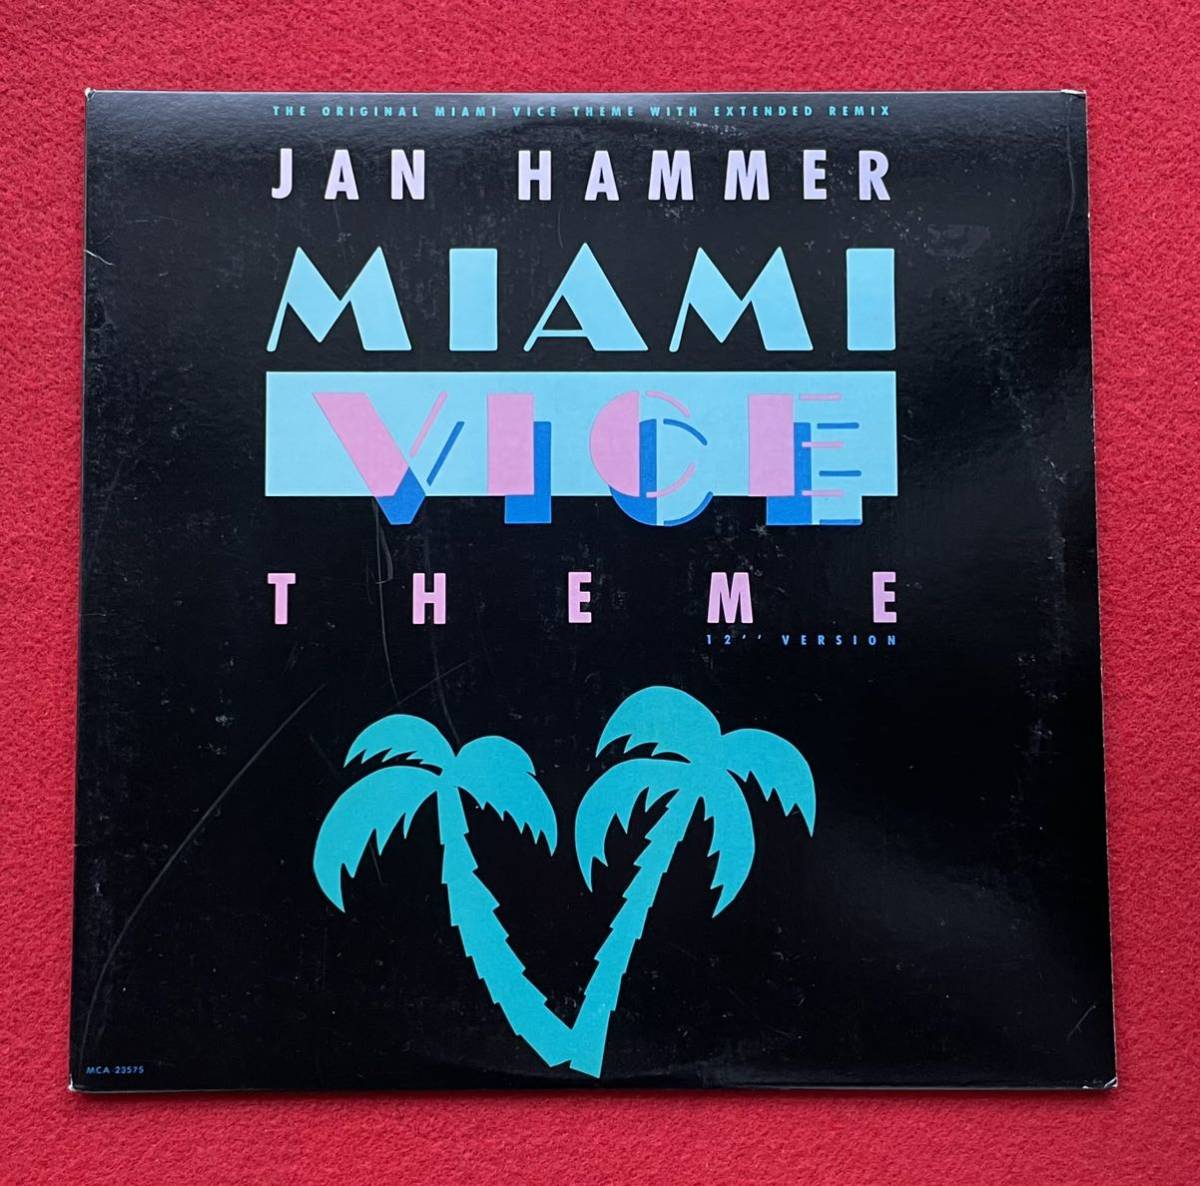 プロモ盤Jan Hammer / Miami Vice Theme 12''盤その他プロモーション盤 レア盤 人気レコード 多数出品。_画像1